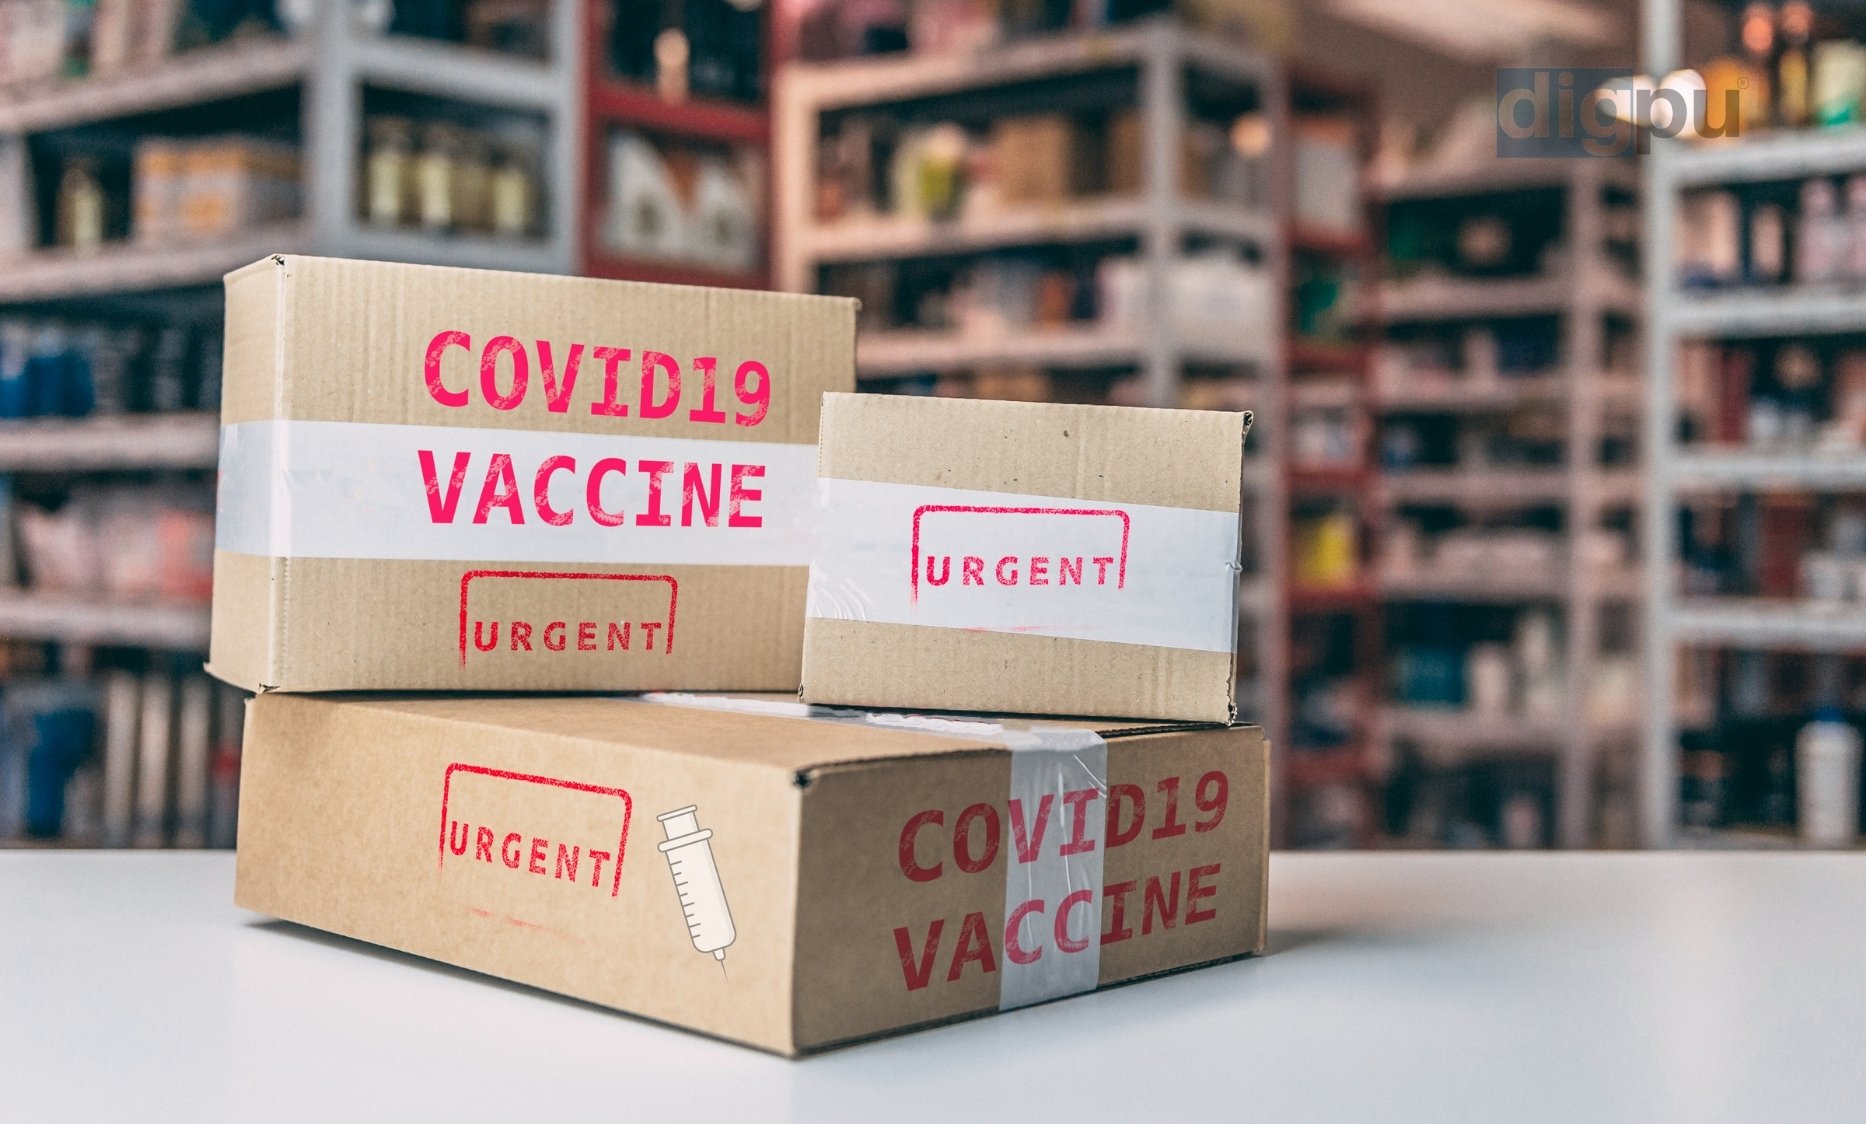 Covid-19 Vaccine Shortage in India